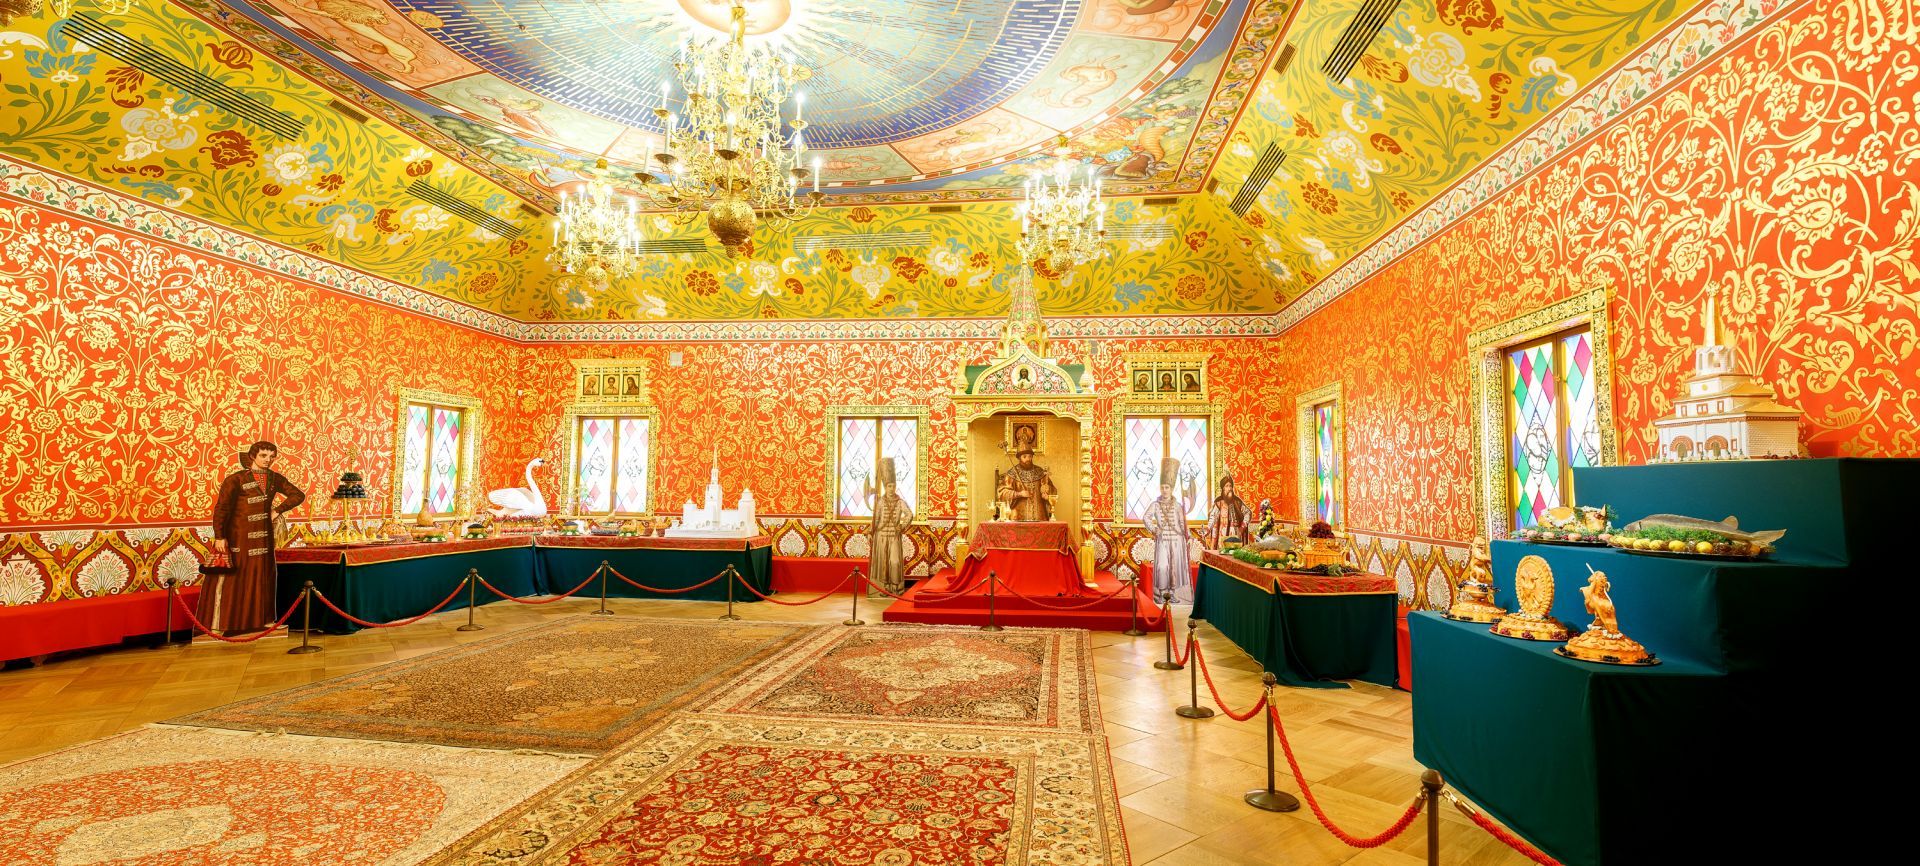 Столовая палата Коломенского дворца